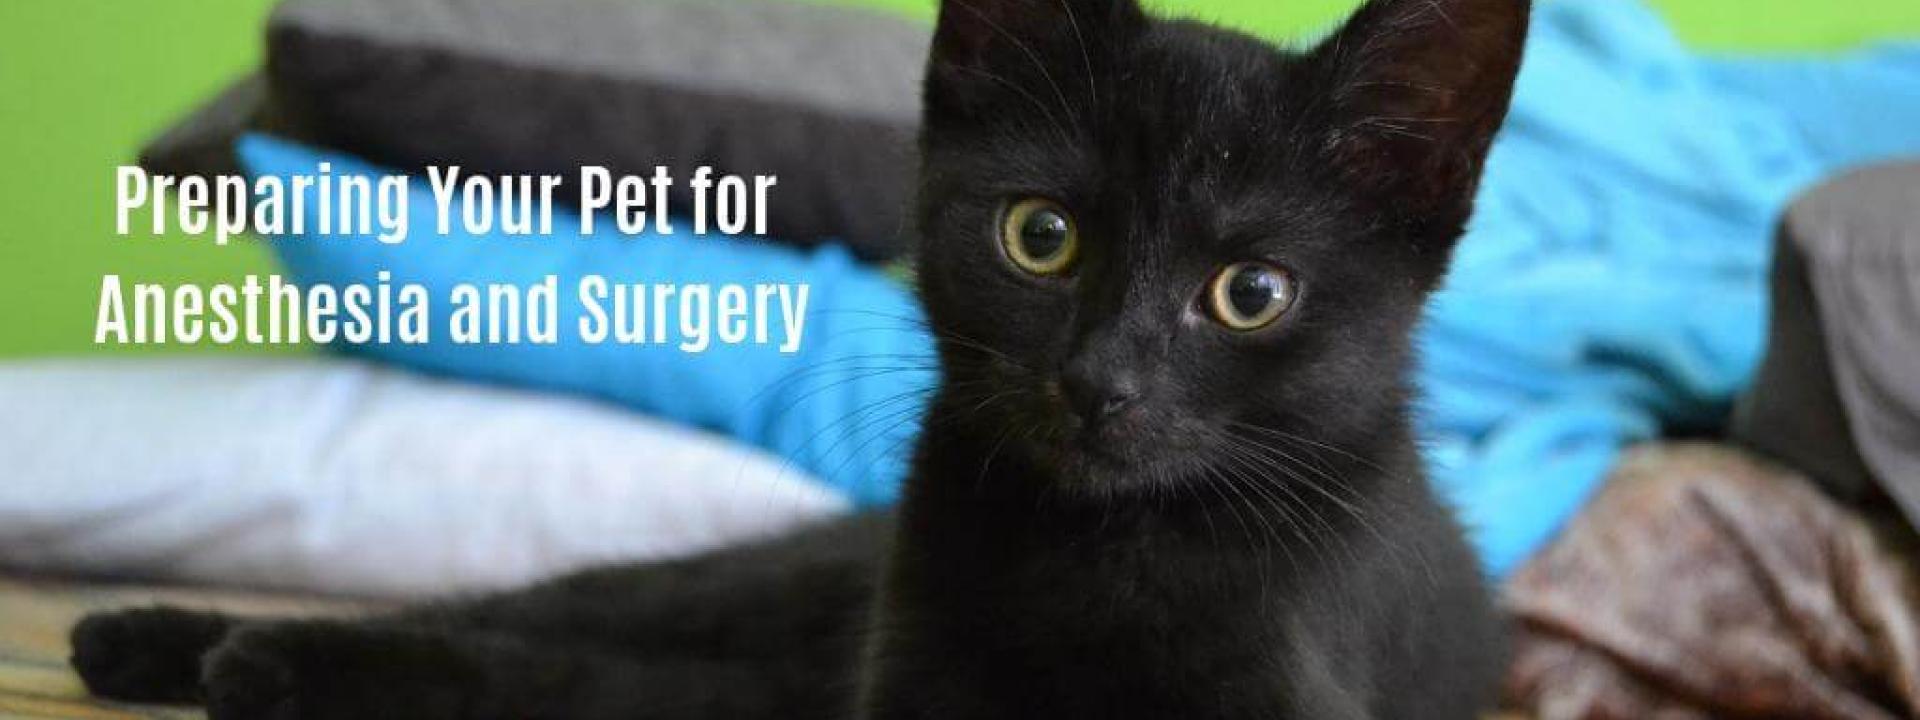 prep-pet-for-surgery